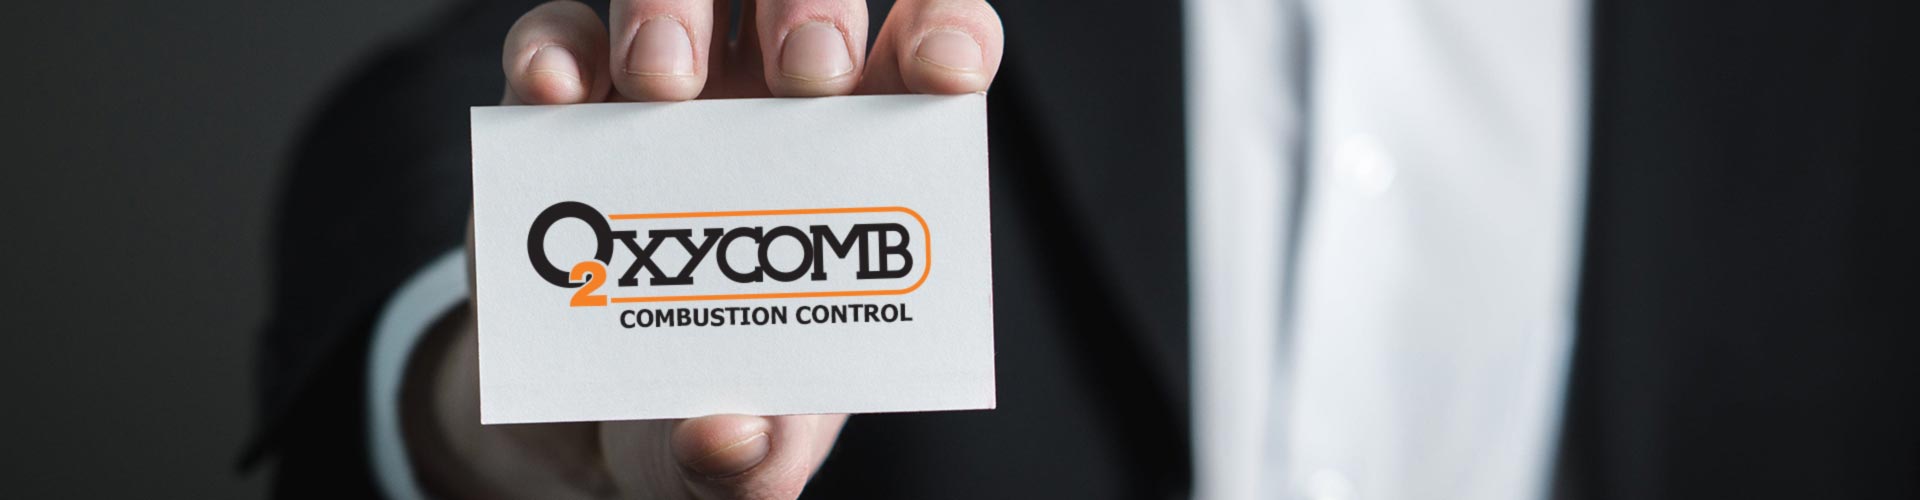 oxycomb control de combustion